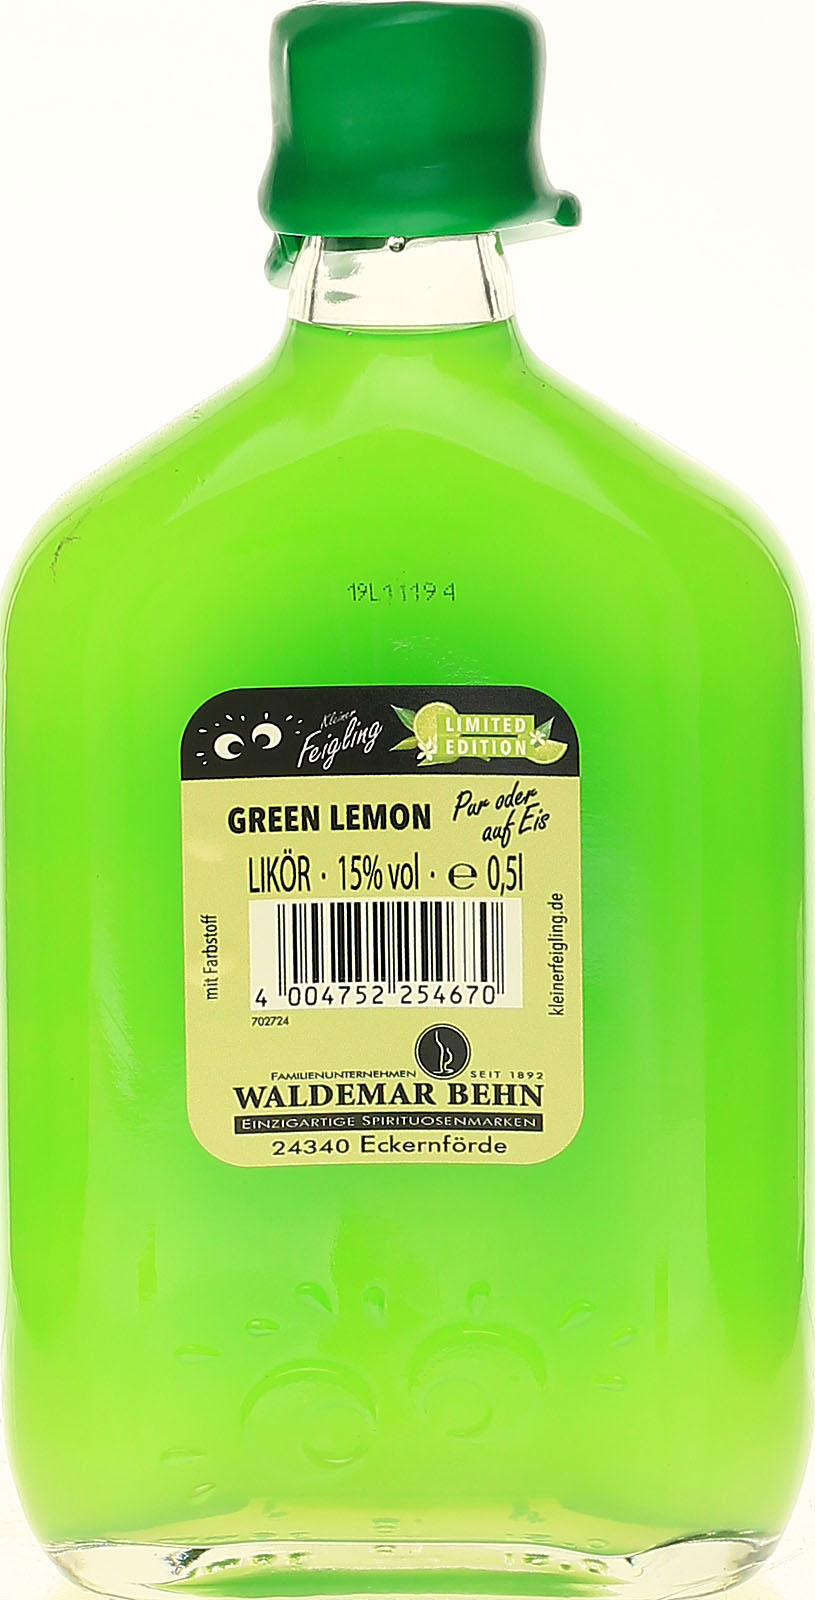 Kleiner Feigling Green Lemon günstig und bei un schnell